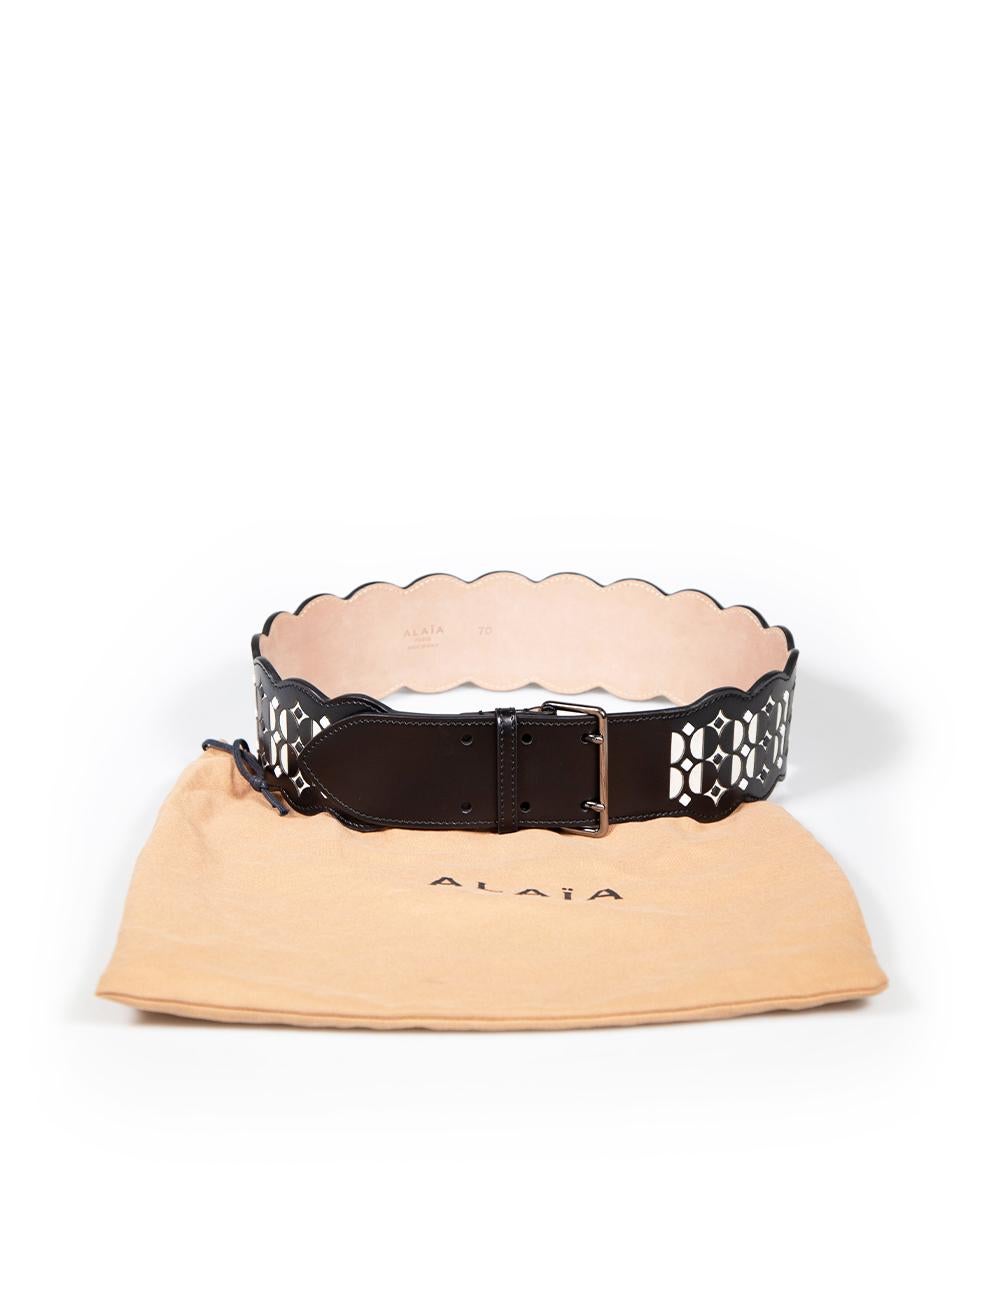 Alaïa Black Leather Patterned Belt For Sale 2